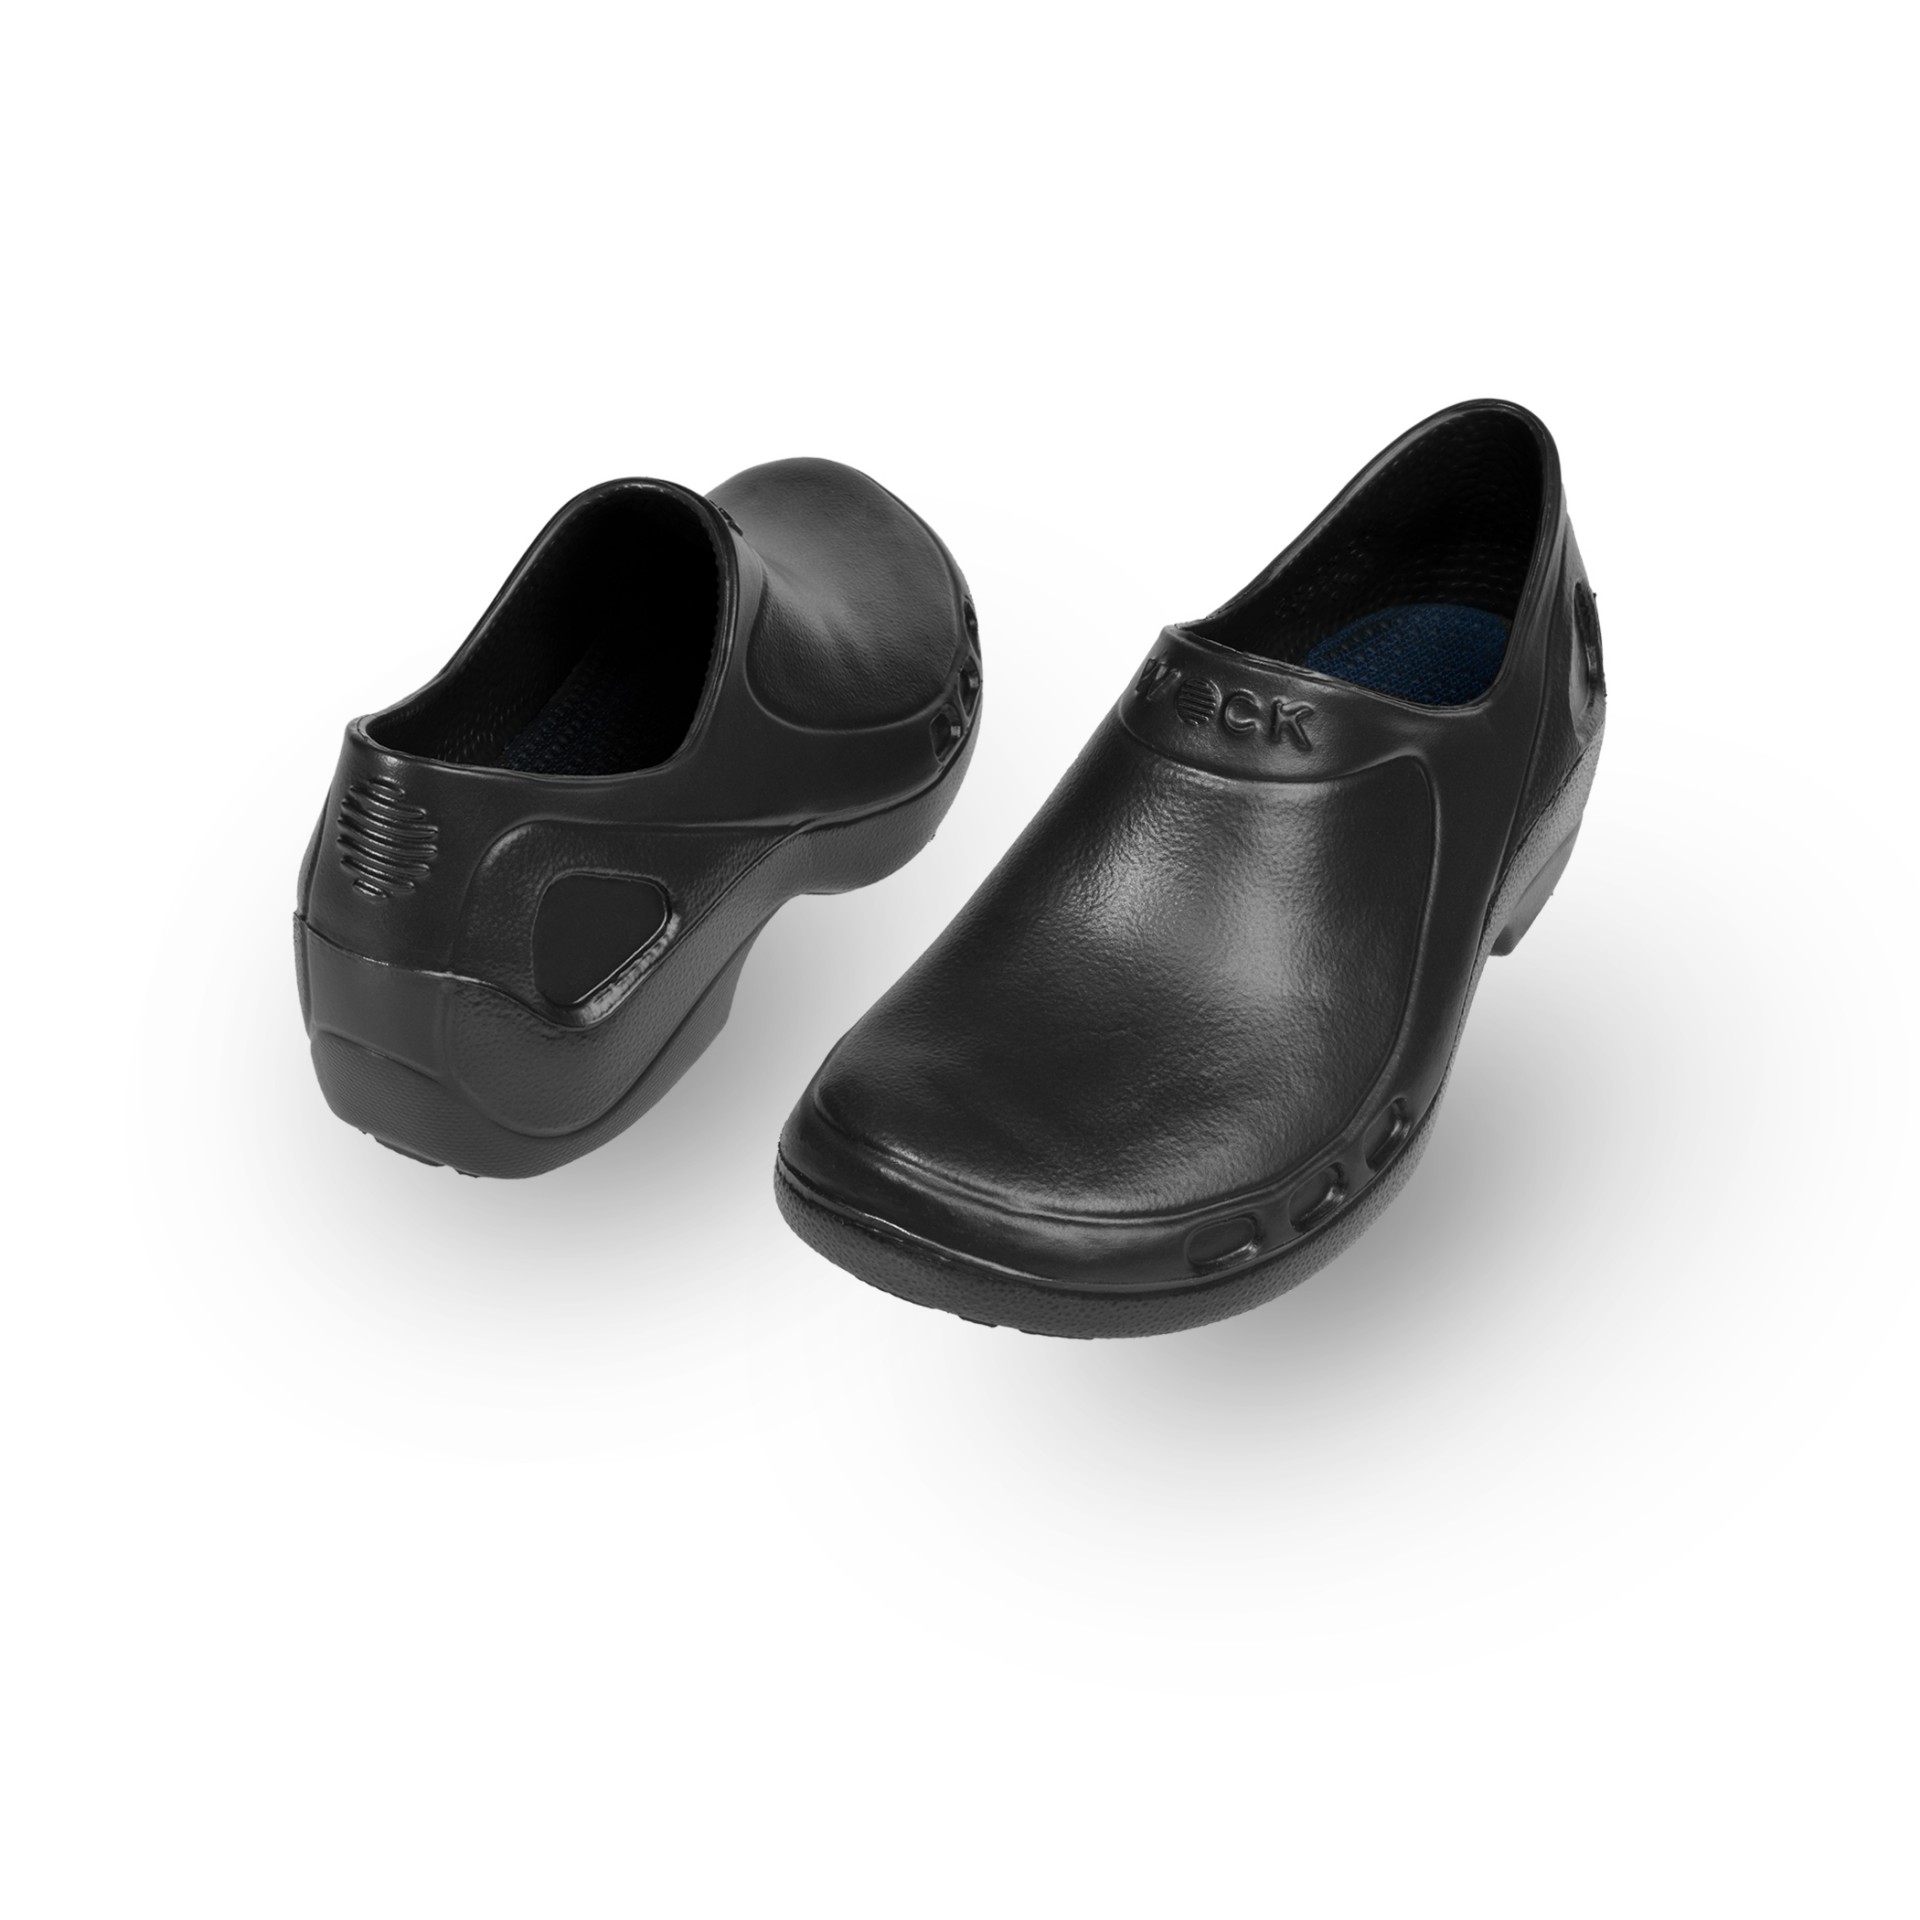 WOCK Black Nursing/Work Shoes EVERLITE CLOSED 02 - 10000281